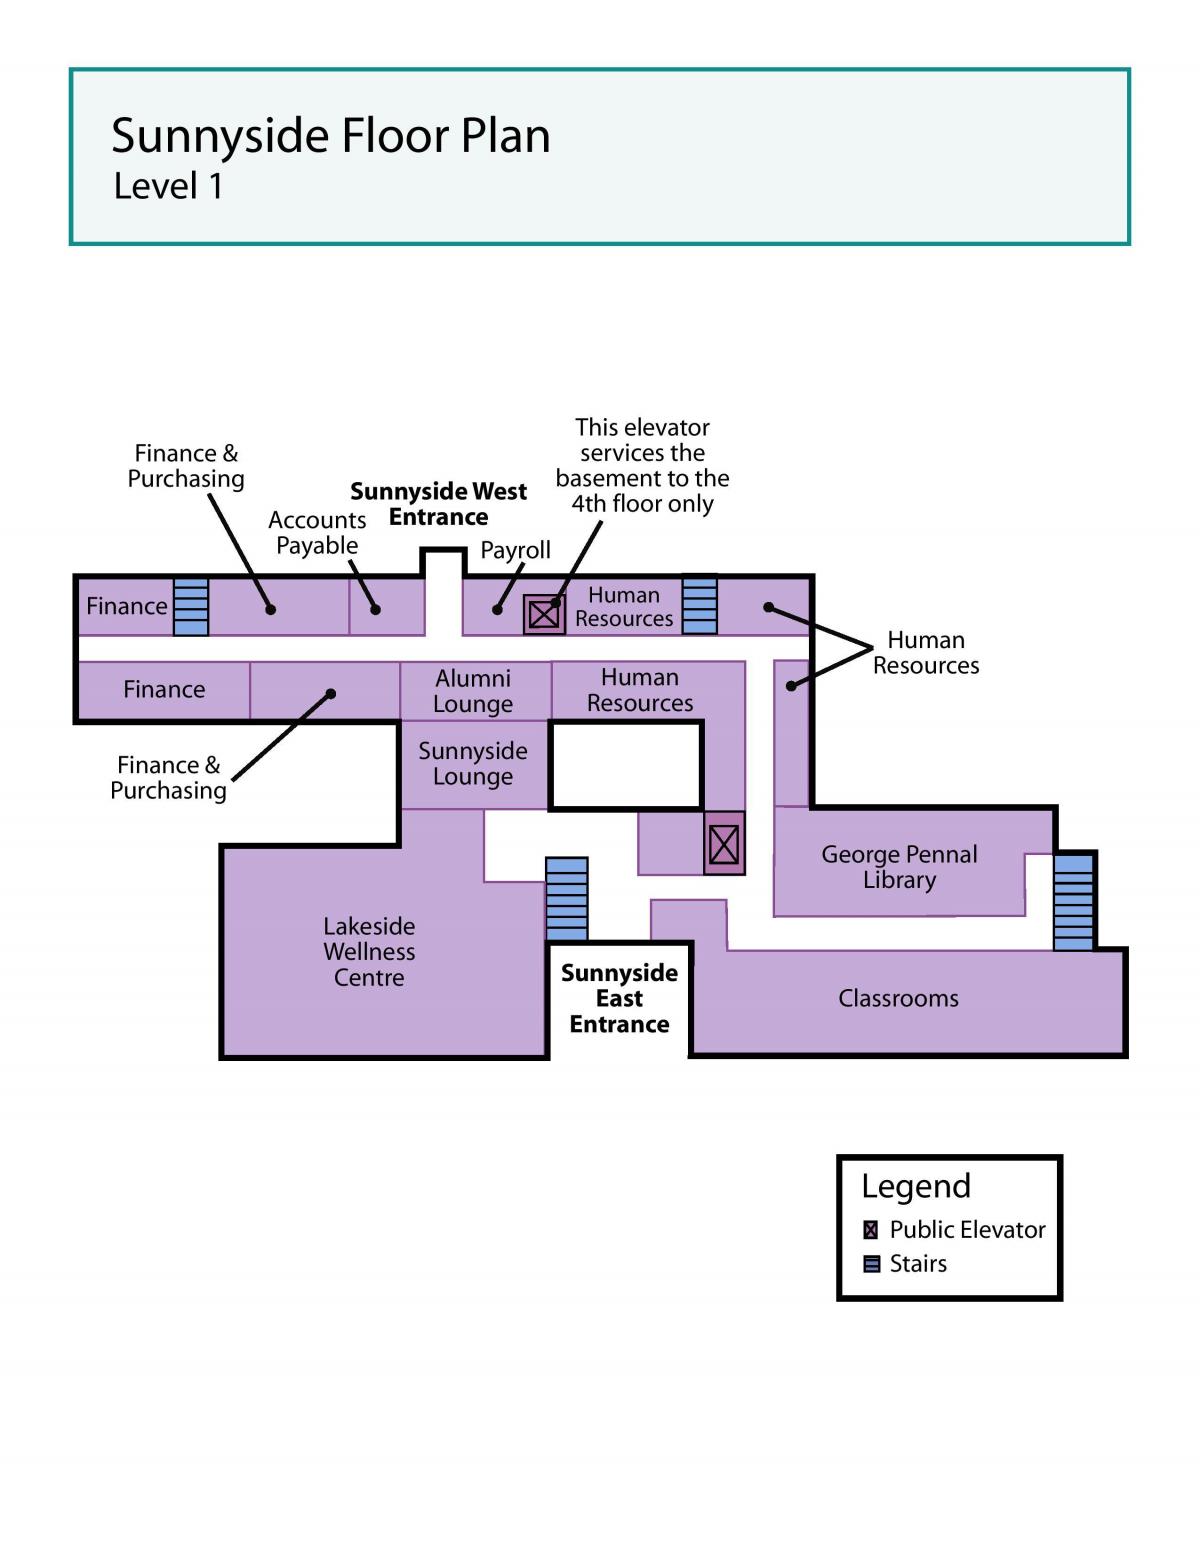 Χάρτης του Αγίου Ιωσήφ κέντρο Υγείας του Τορόντο Sunnyside επίπεδο 1